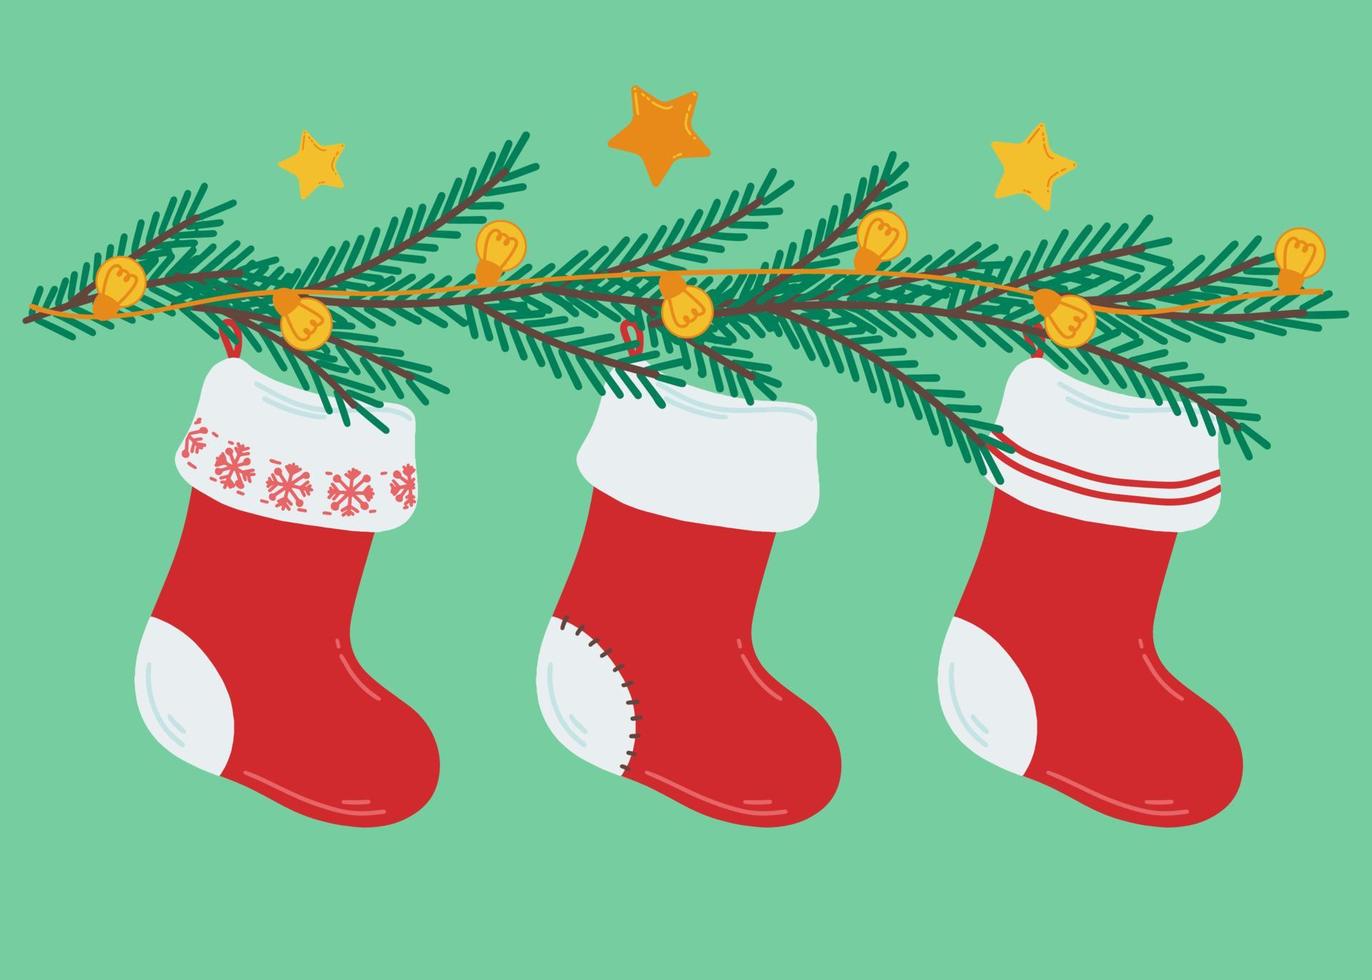 illustration med jul strumpor för gåvor. gran grenar med ljus lökar och stjärnor. jul krans. dekoration med gran grenar och järnek. vektor illustration för grafik, vykort.